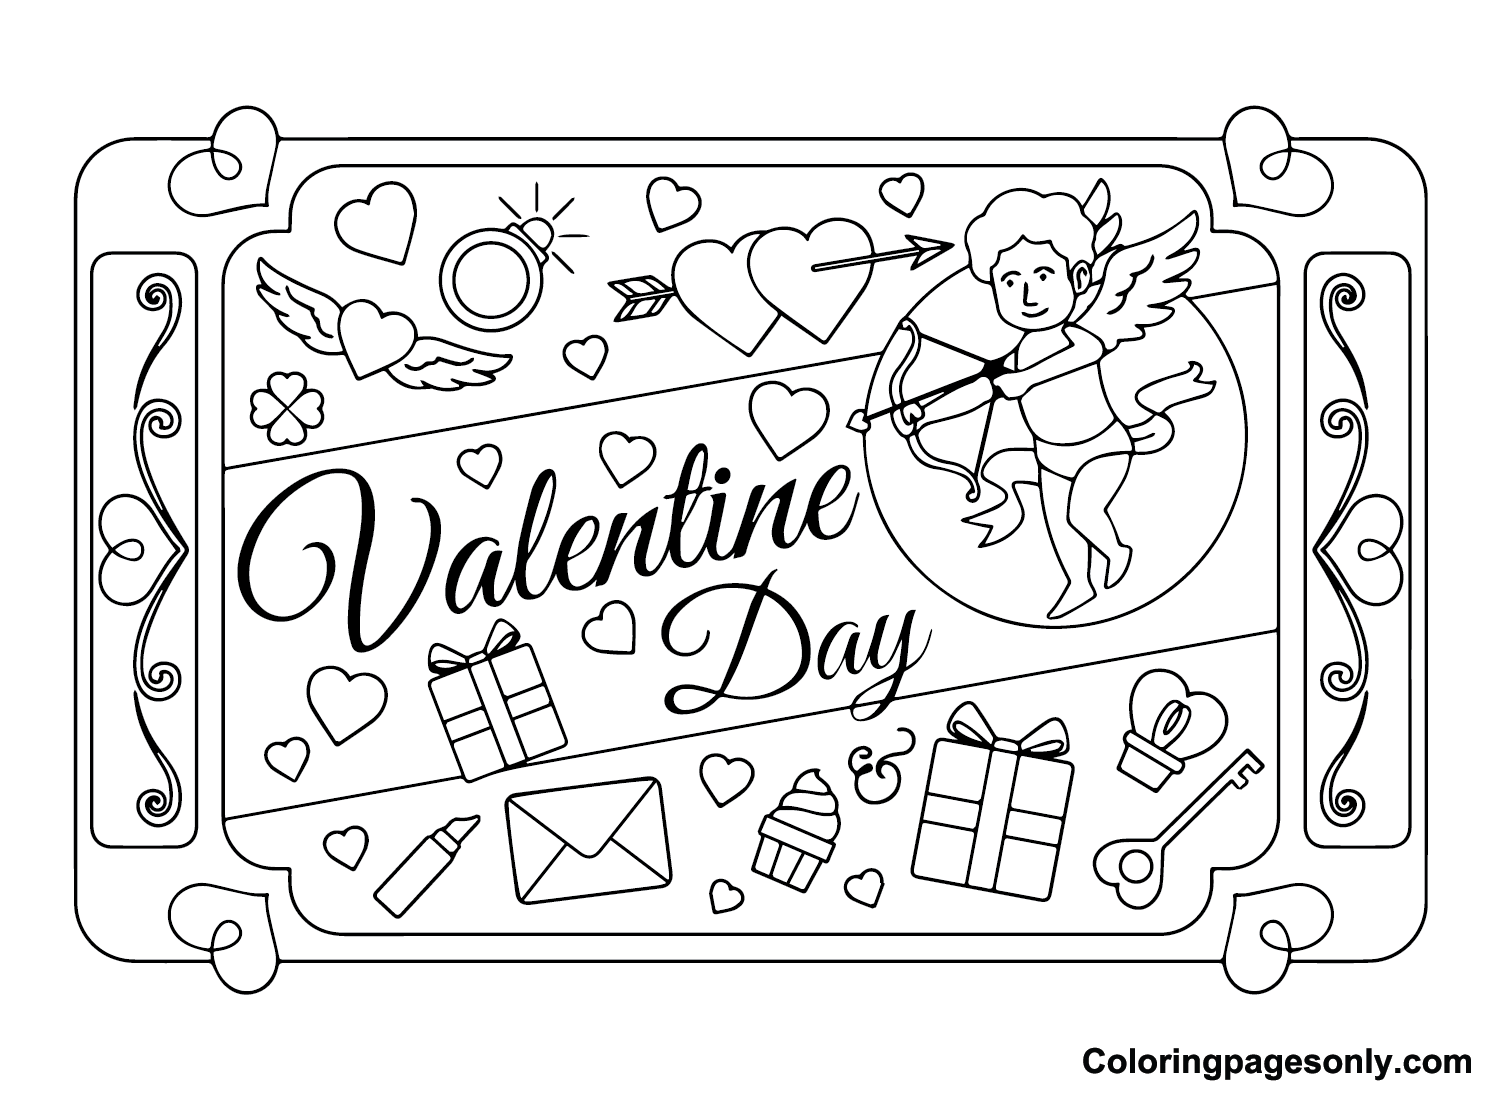 Cartes de Saint-Valentin gratuites à partir de cartes de Saint-Valentin